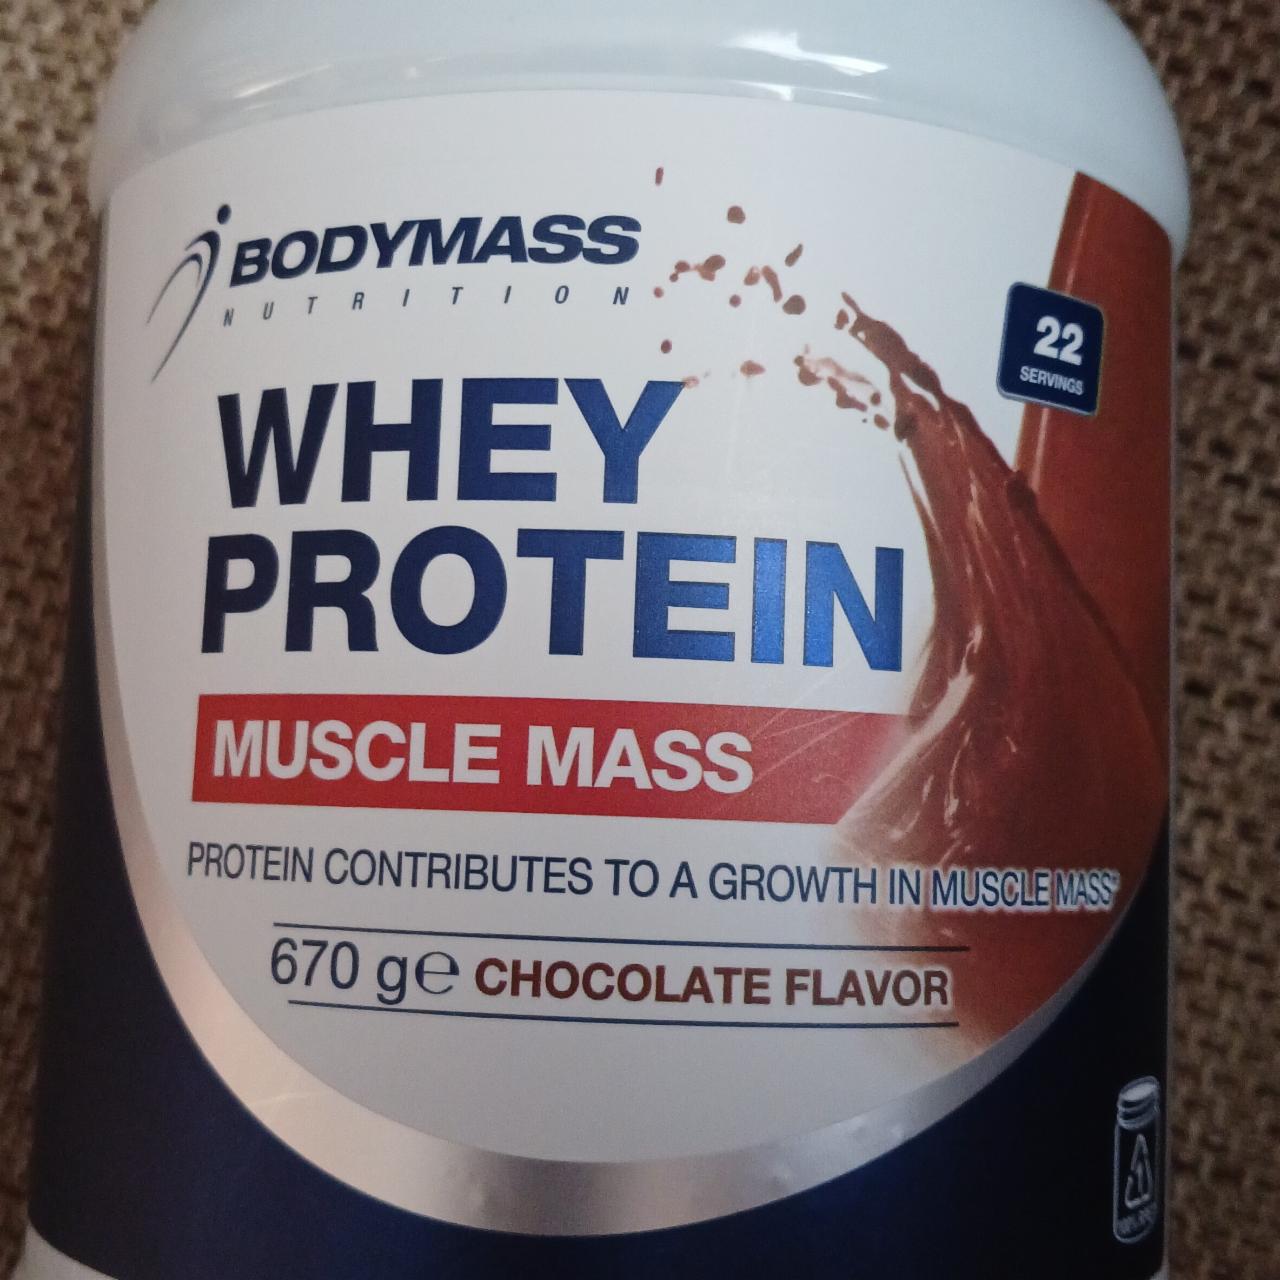 Zdjęcia - Whey protein Muscle Mass Chocolate flavor BodyMass